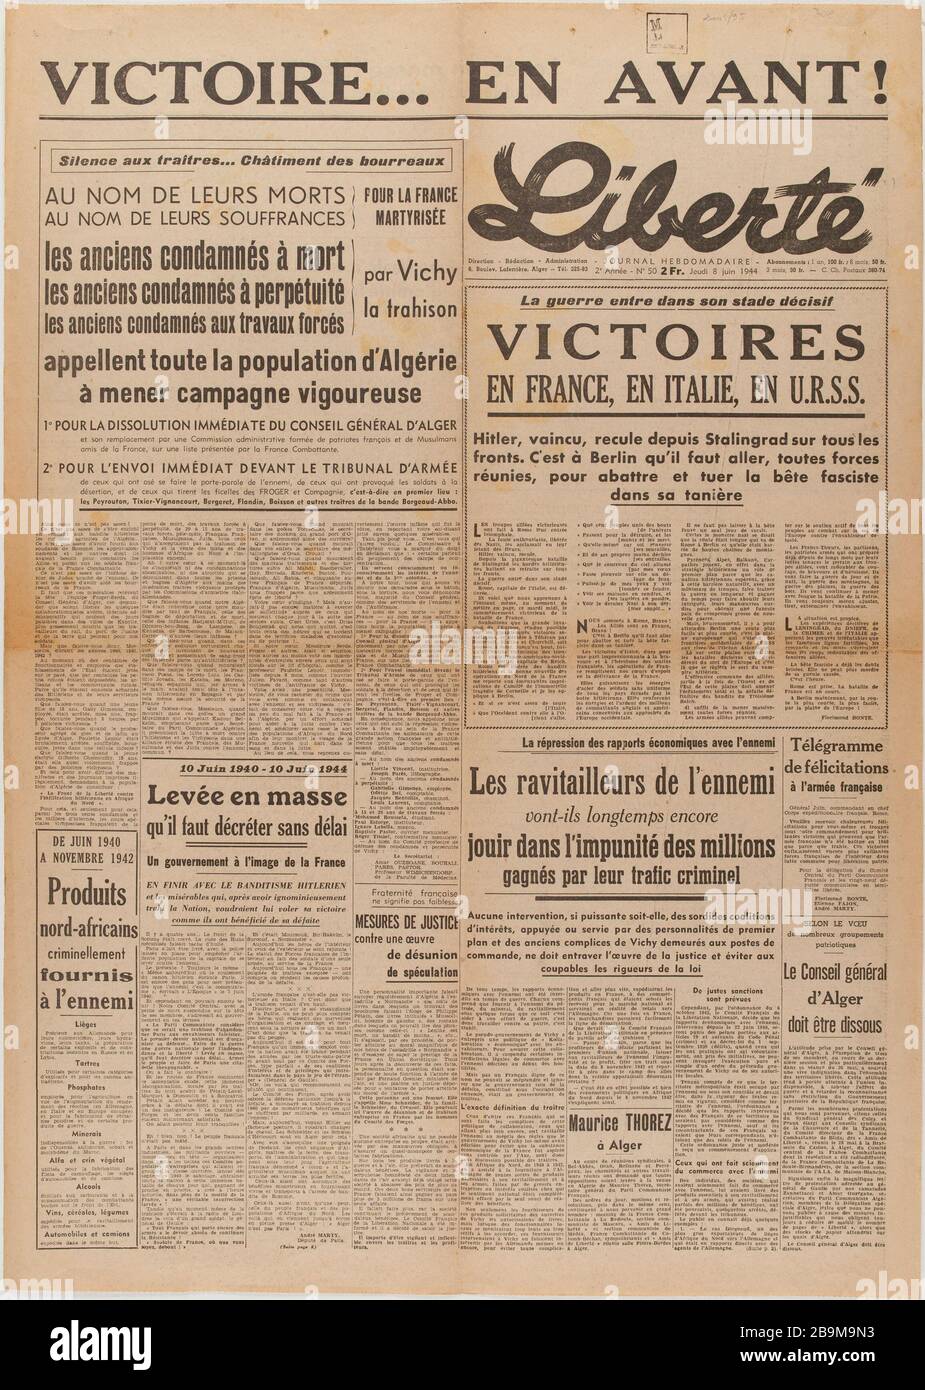 Newspaper 'Freedom' from June 8, 1944 Journal 'Liberté' du 8 juin 1944. Papier imprimé, 1944. Musée du Général Leclerc de Hauteclocque et de la Libération de Paris, musée Jean Moulin. Stock Photo